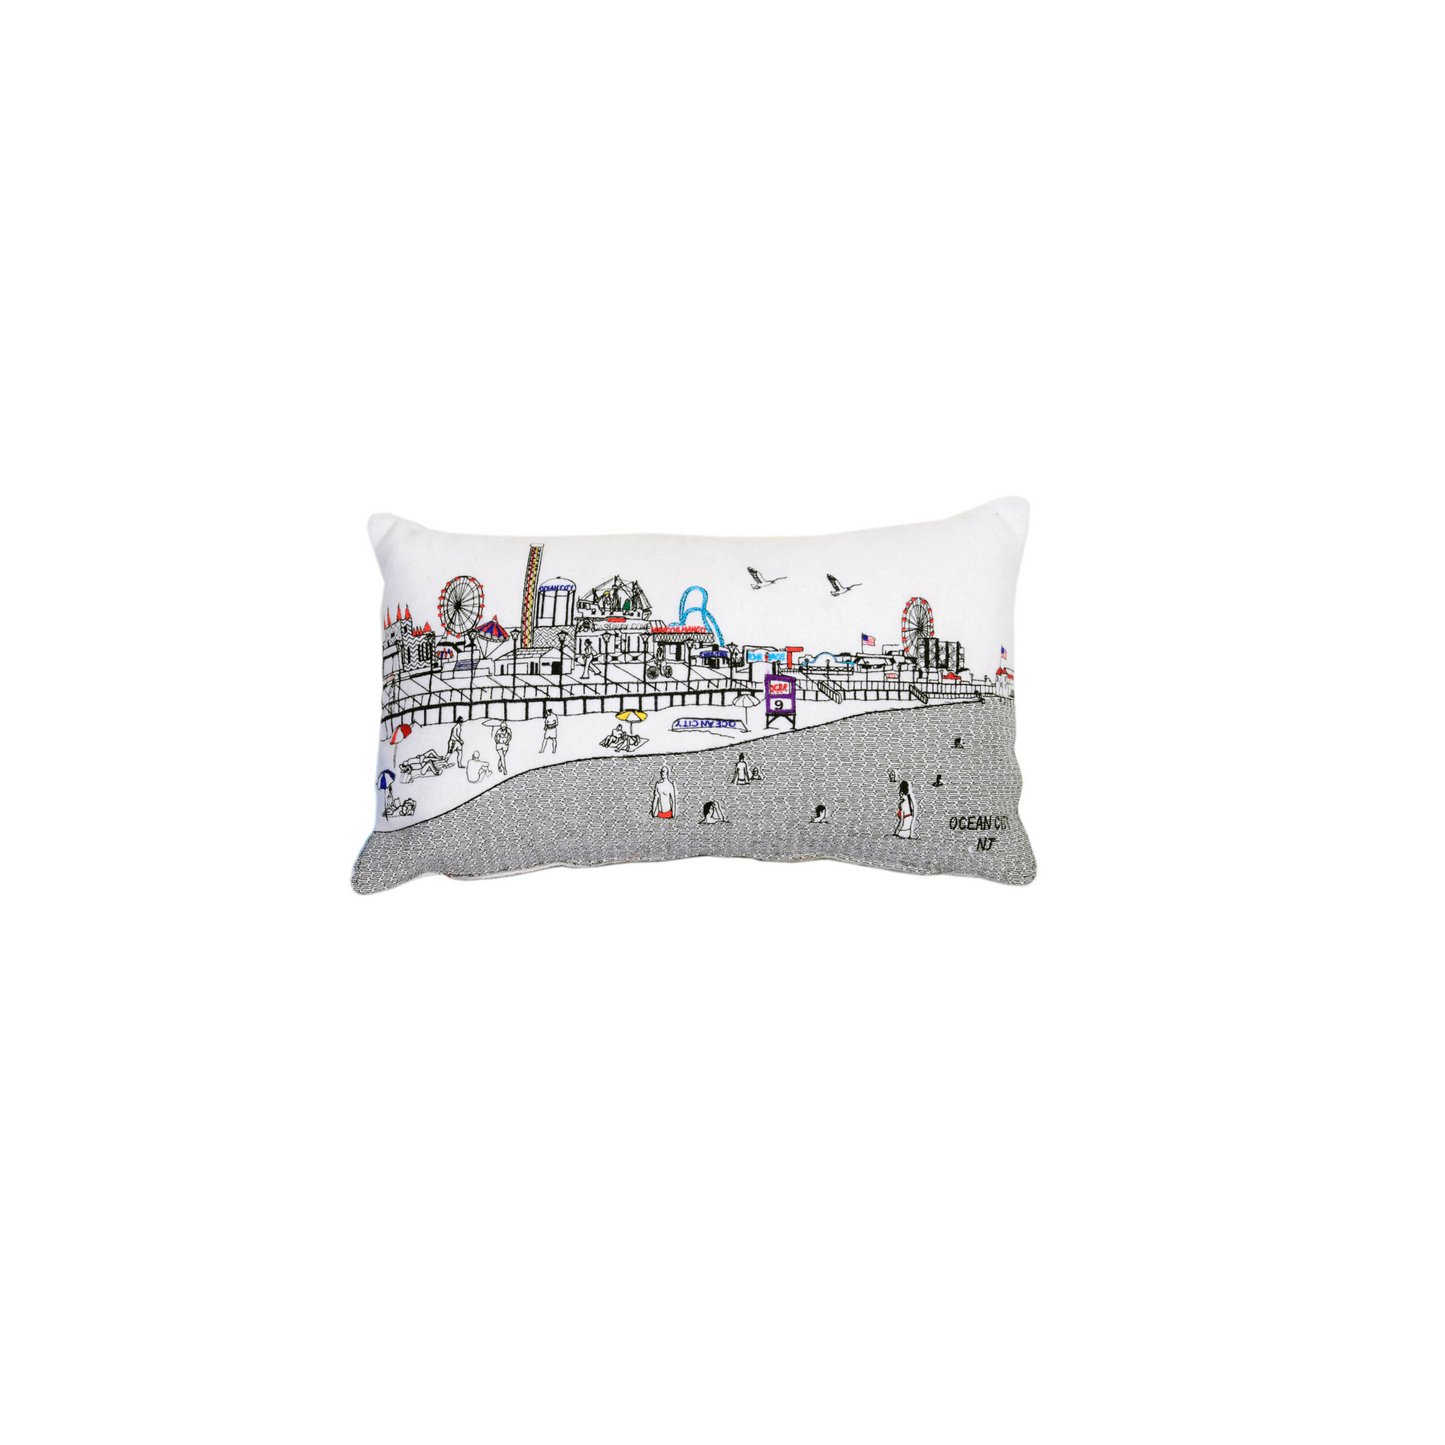 Ocean City NJ Pillow - custom